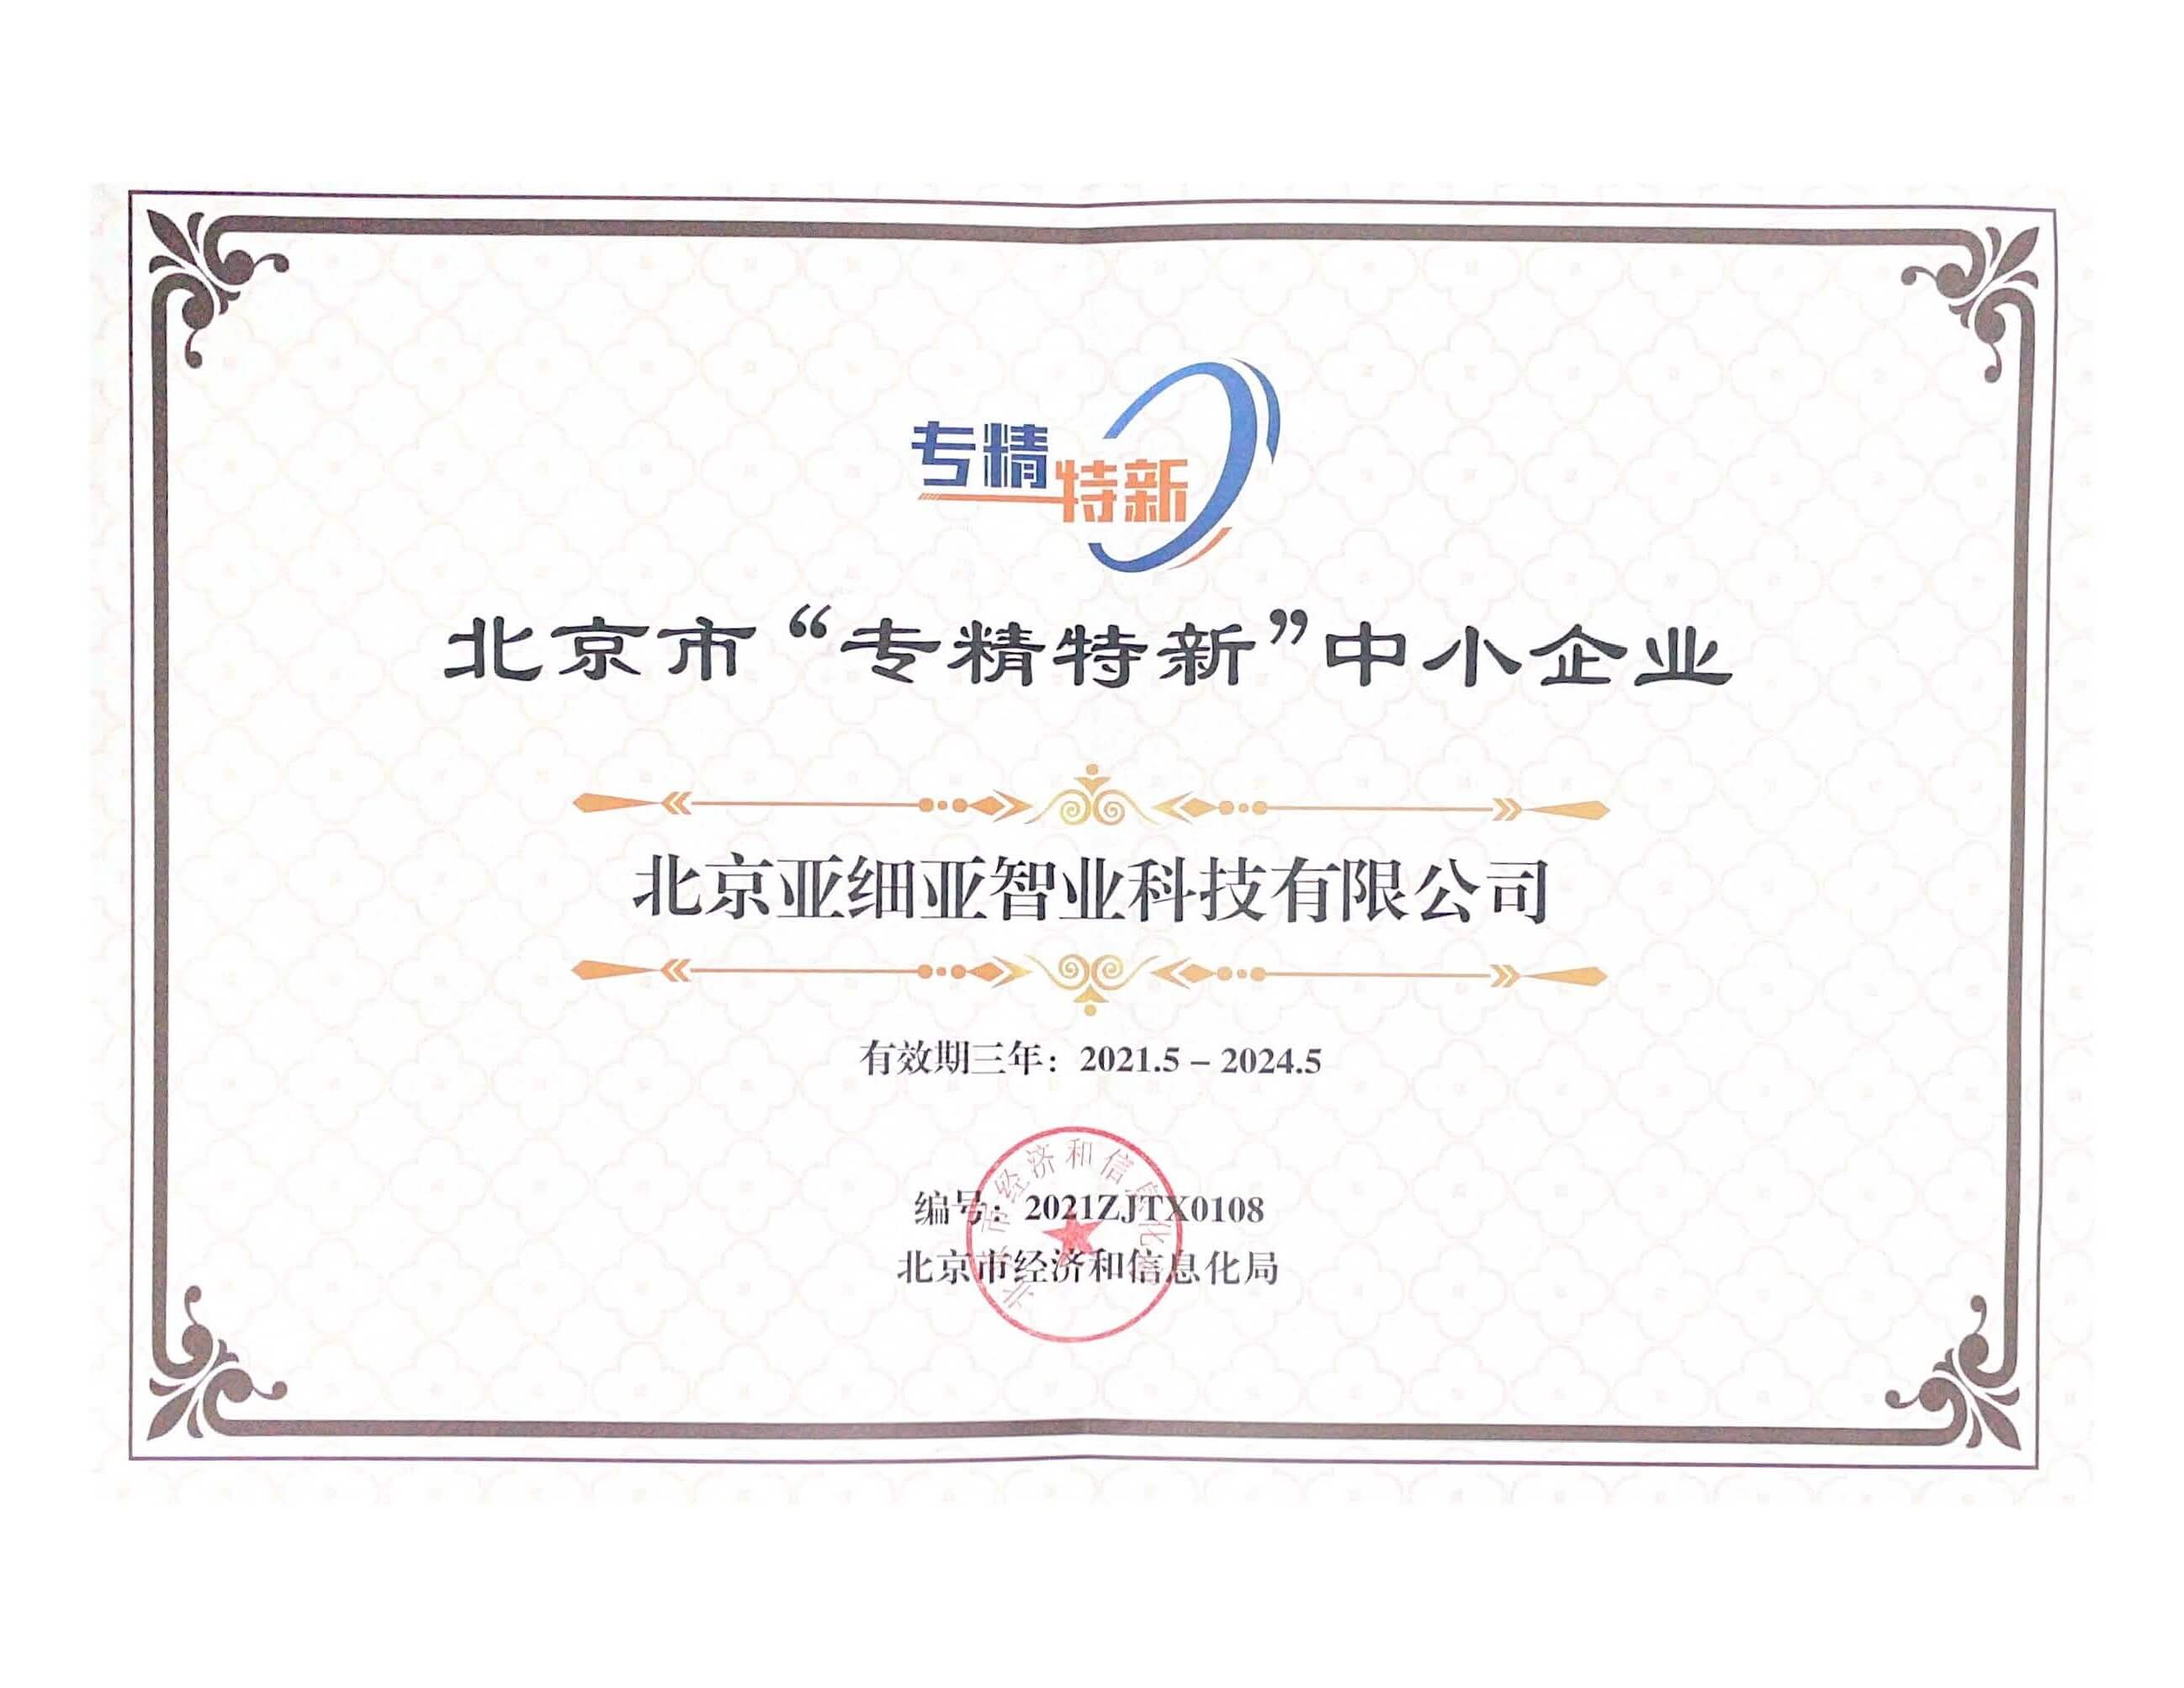 10月21日正式更名为北京火星高科数字科技有限公司。同年荣获“北京市专精特新小巨人企业”荣誉。